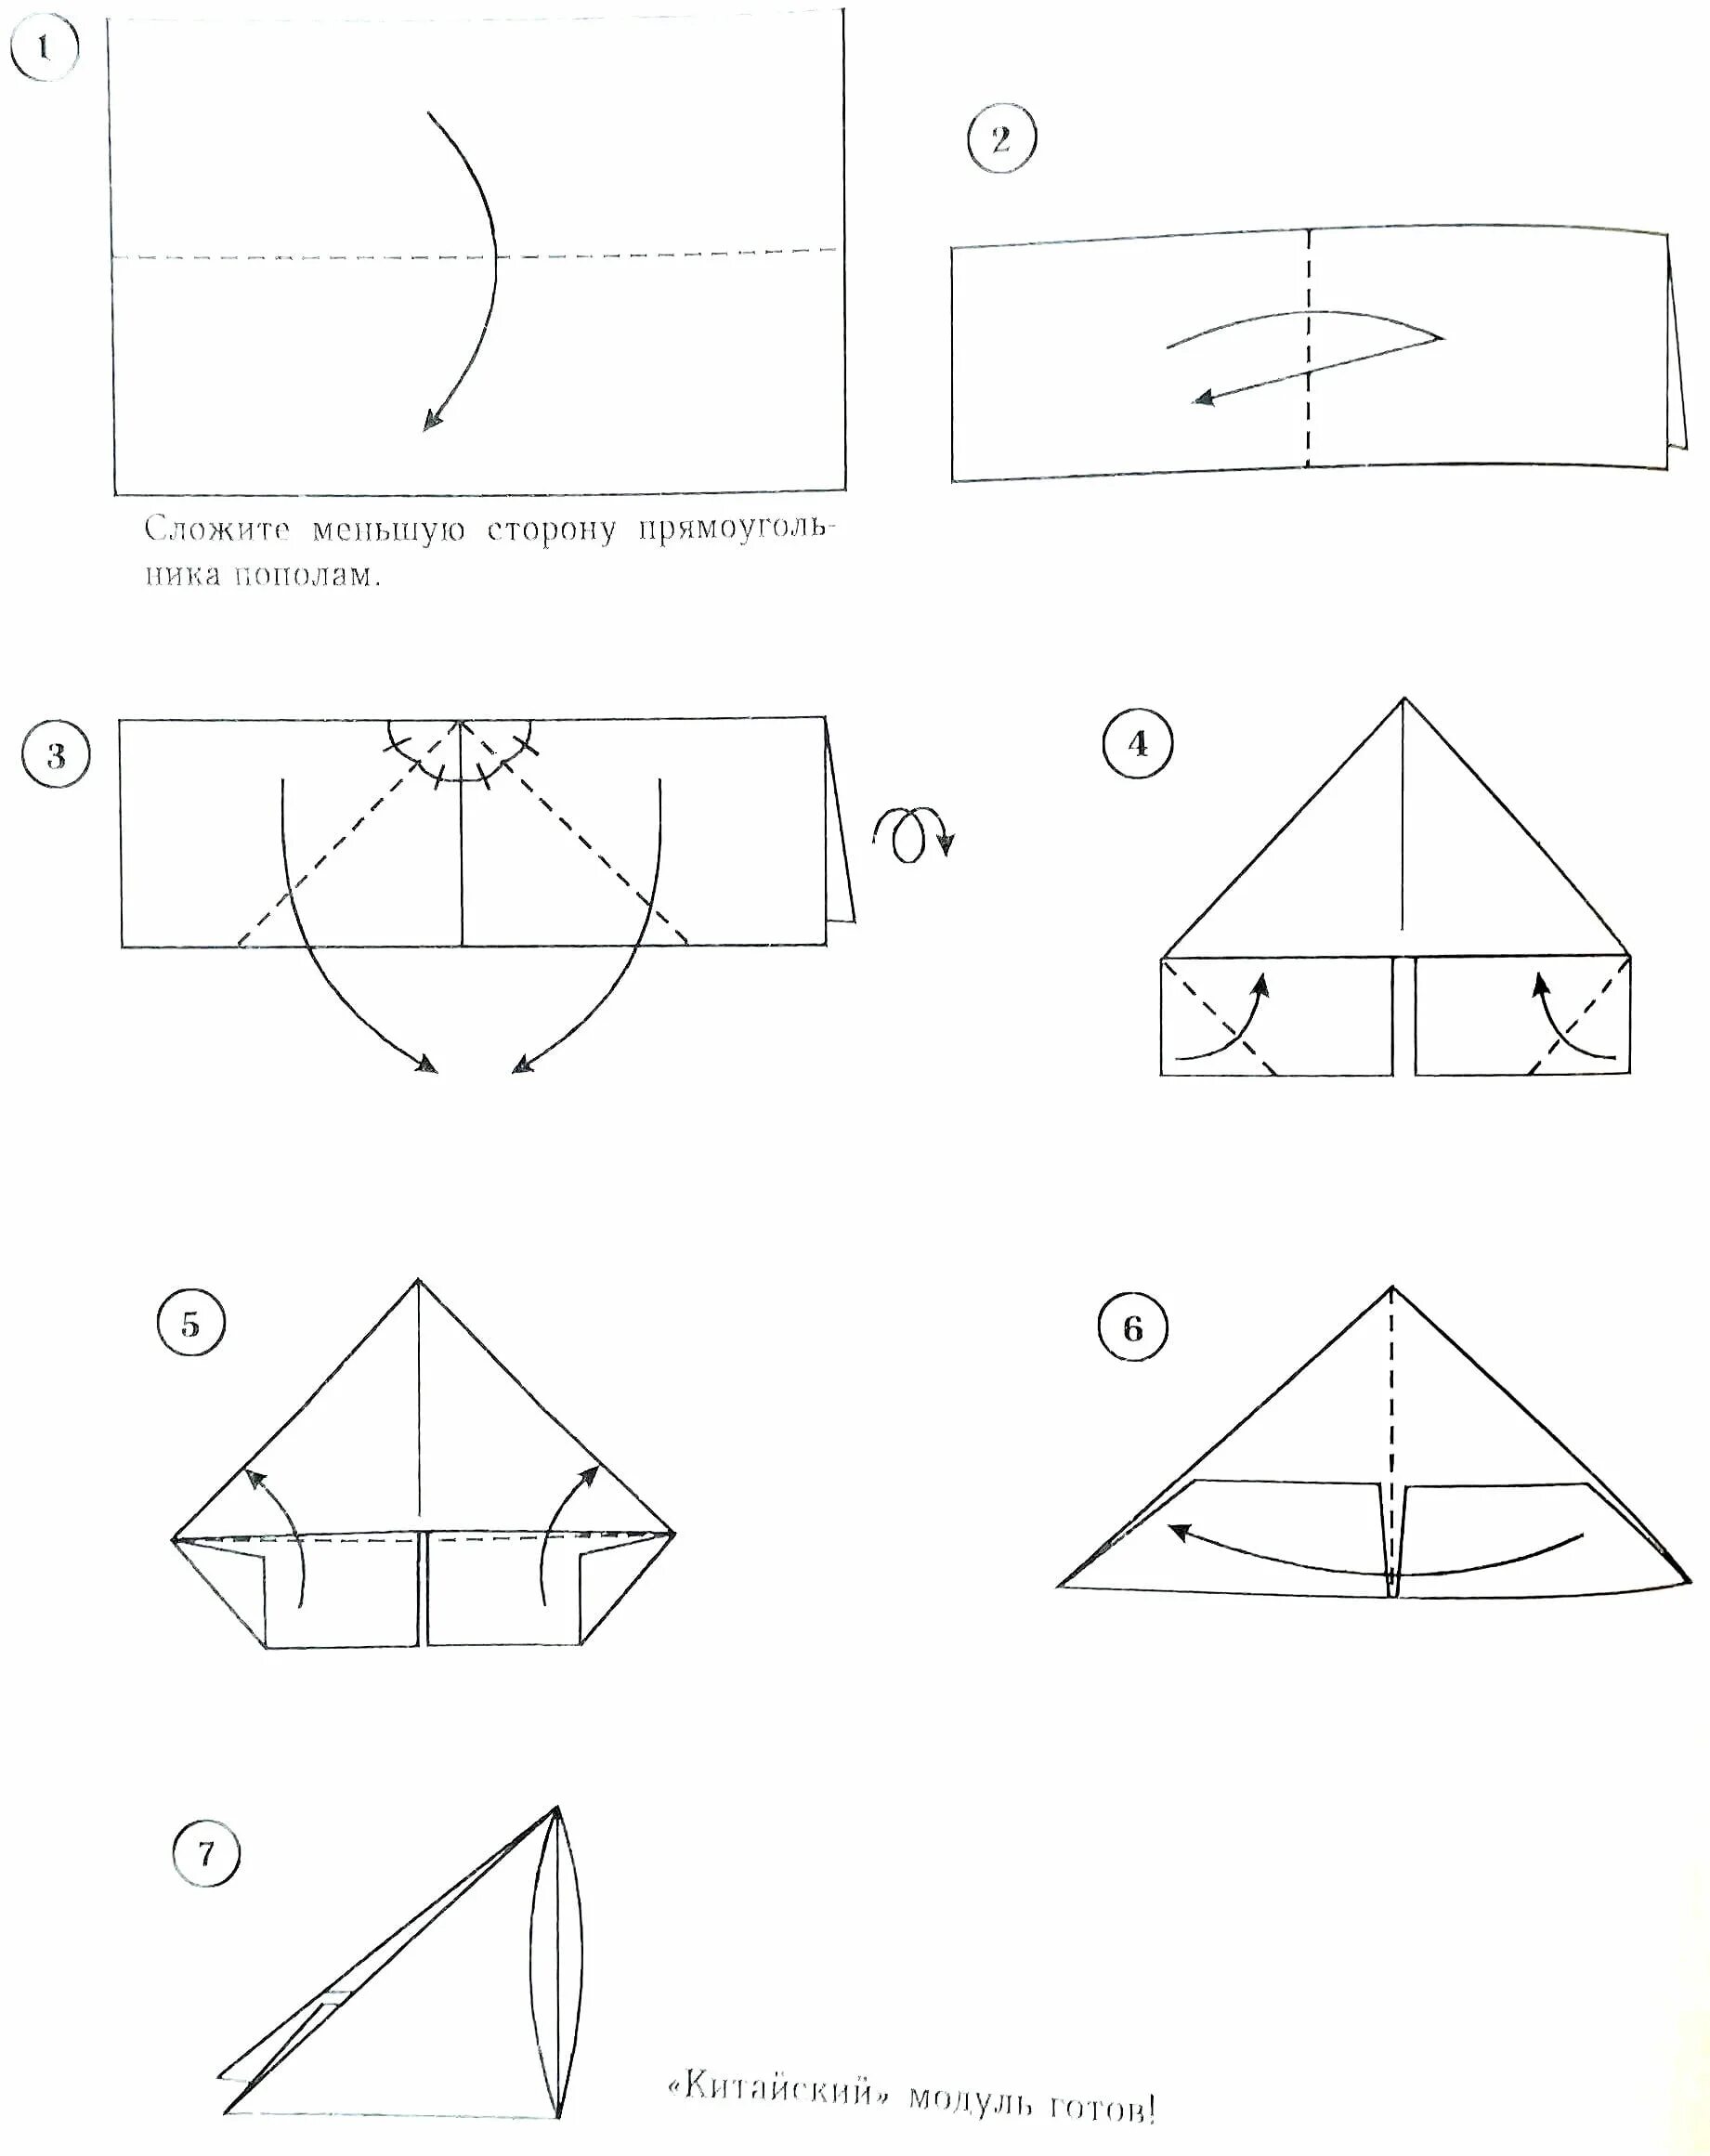 Модульное оригами для начинающих схемы пошагово простые. Схема сборки треугольного модуля. Модуль из бумаги для модульного оригами схема сборки. Модульное оригами схема сборки пошагово для начинающих. Модуль оригами инструкция